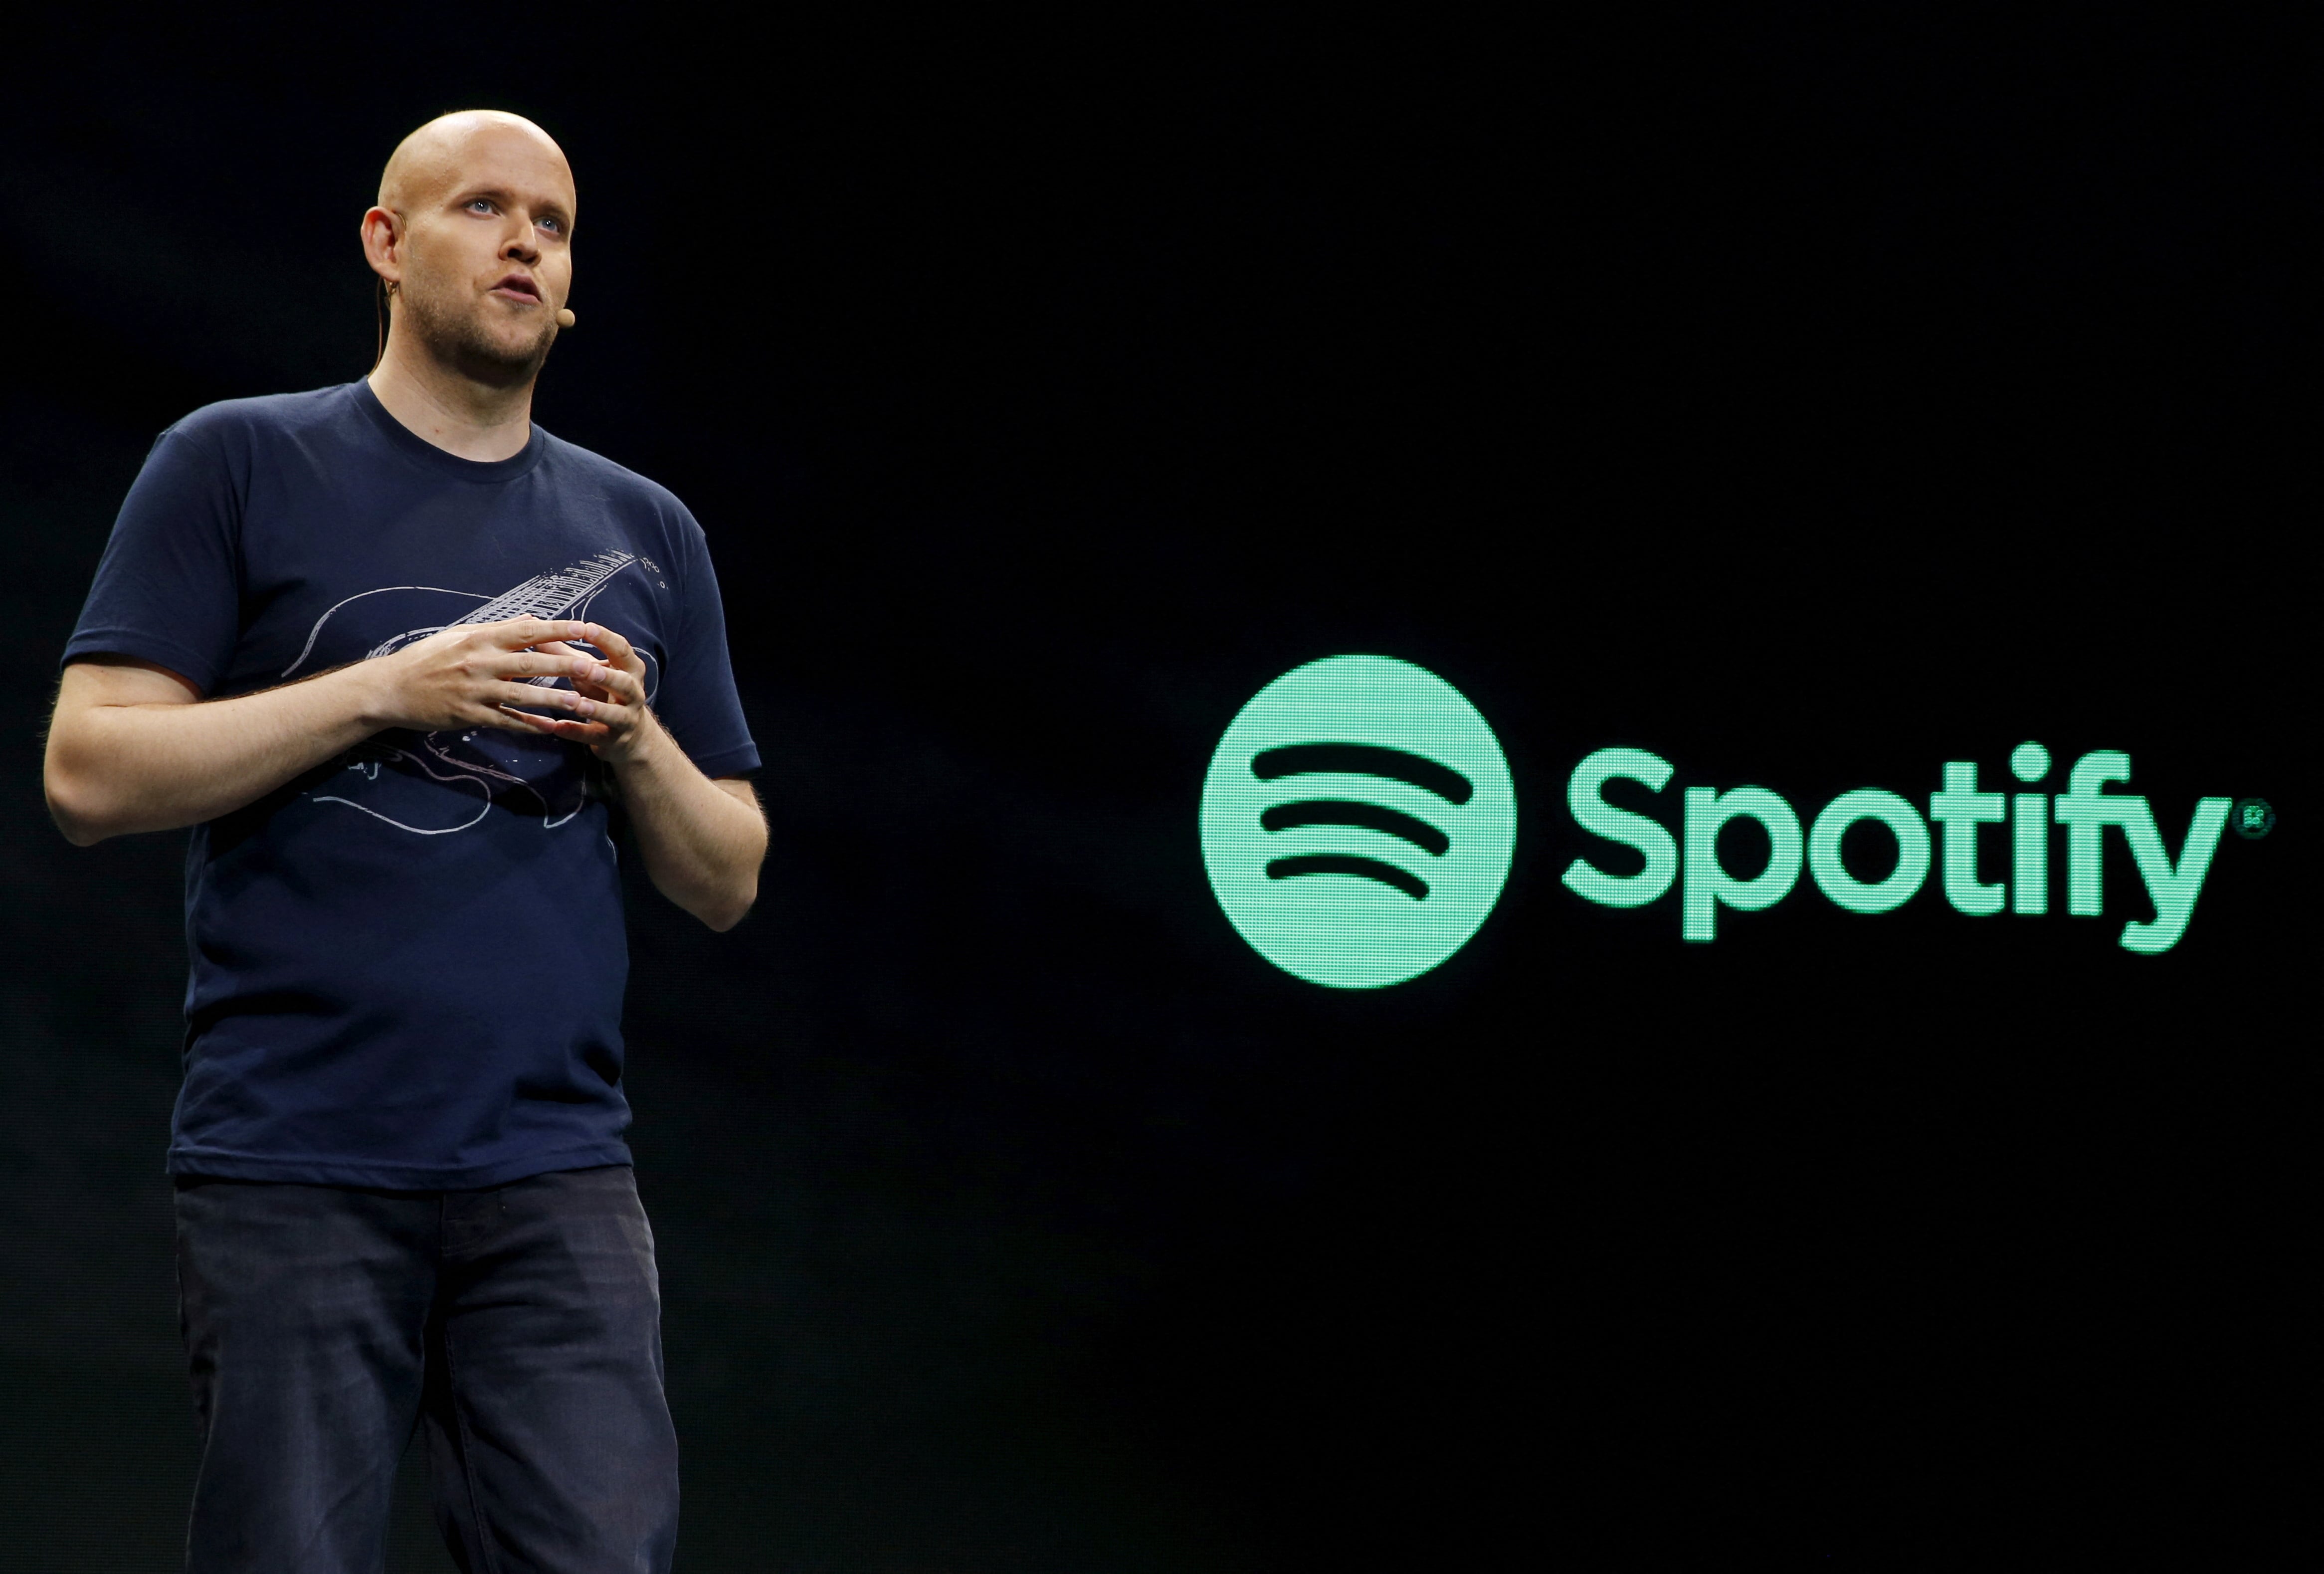 El consejero delegado de Spotify, Daniel Ek, habla durante un evento de prensa en Nueva York el 20 de mayo de 2015. Spotify es uno de los pocos gigantes tecnológicos europeos.